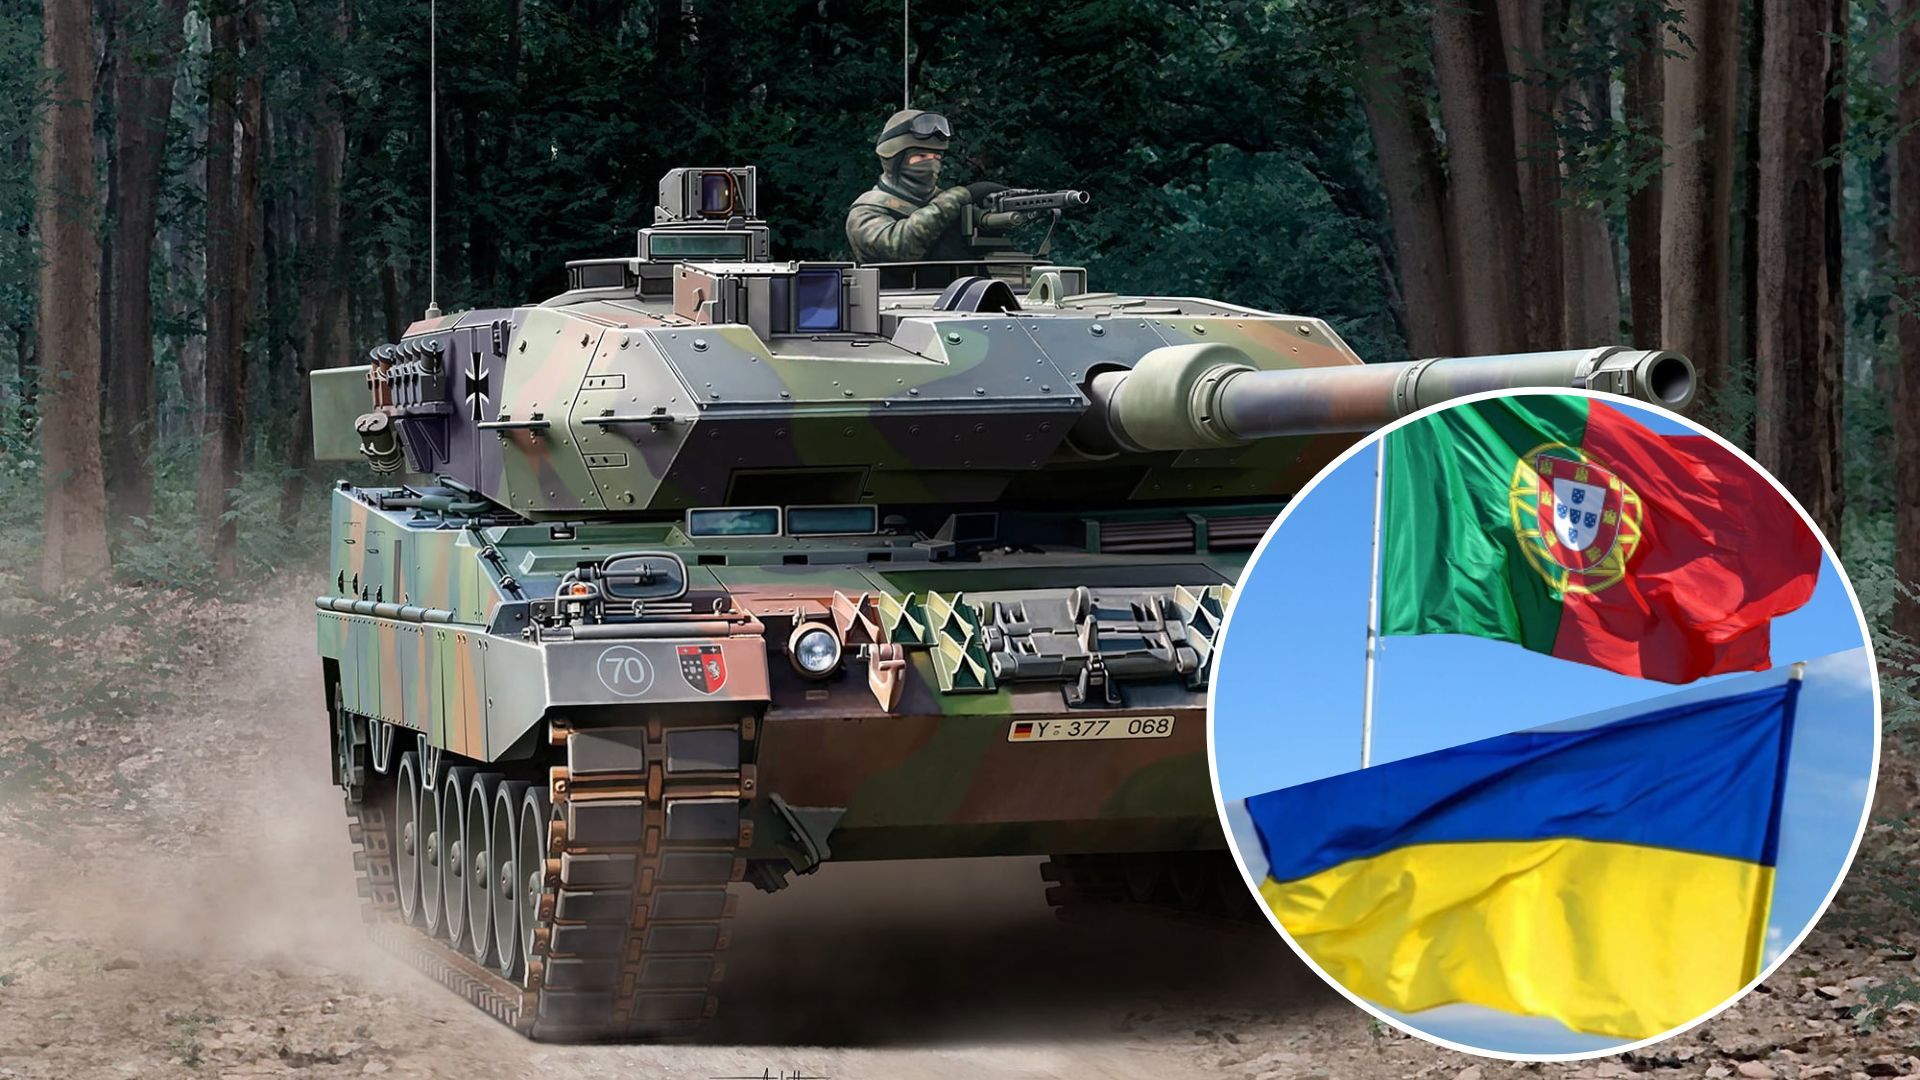 Leopard 2 для України - Португалія передала три танки - 24 Канал